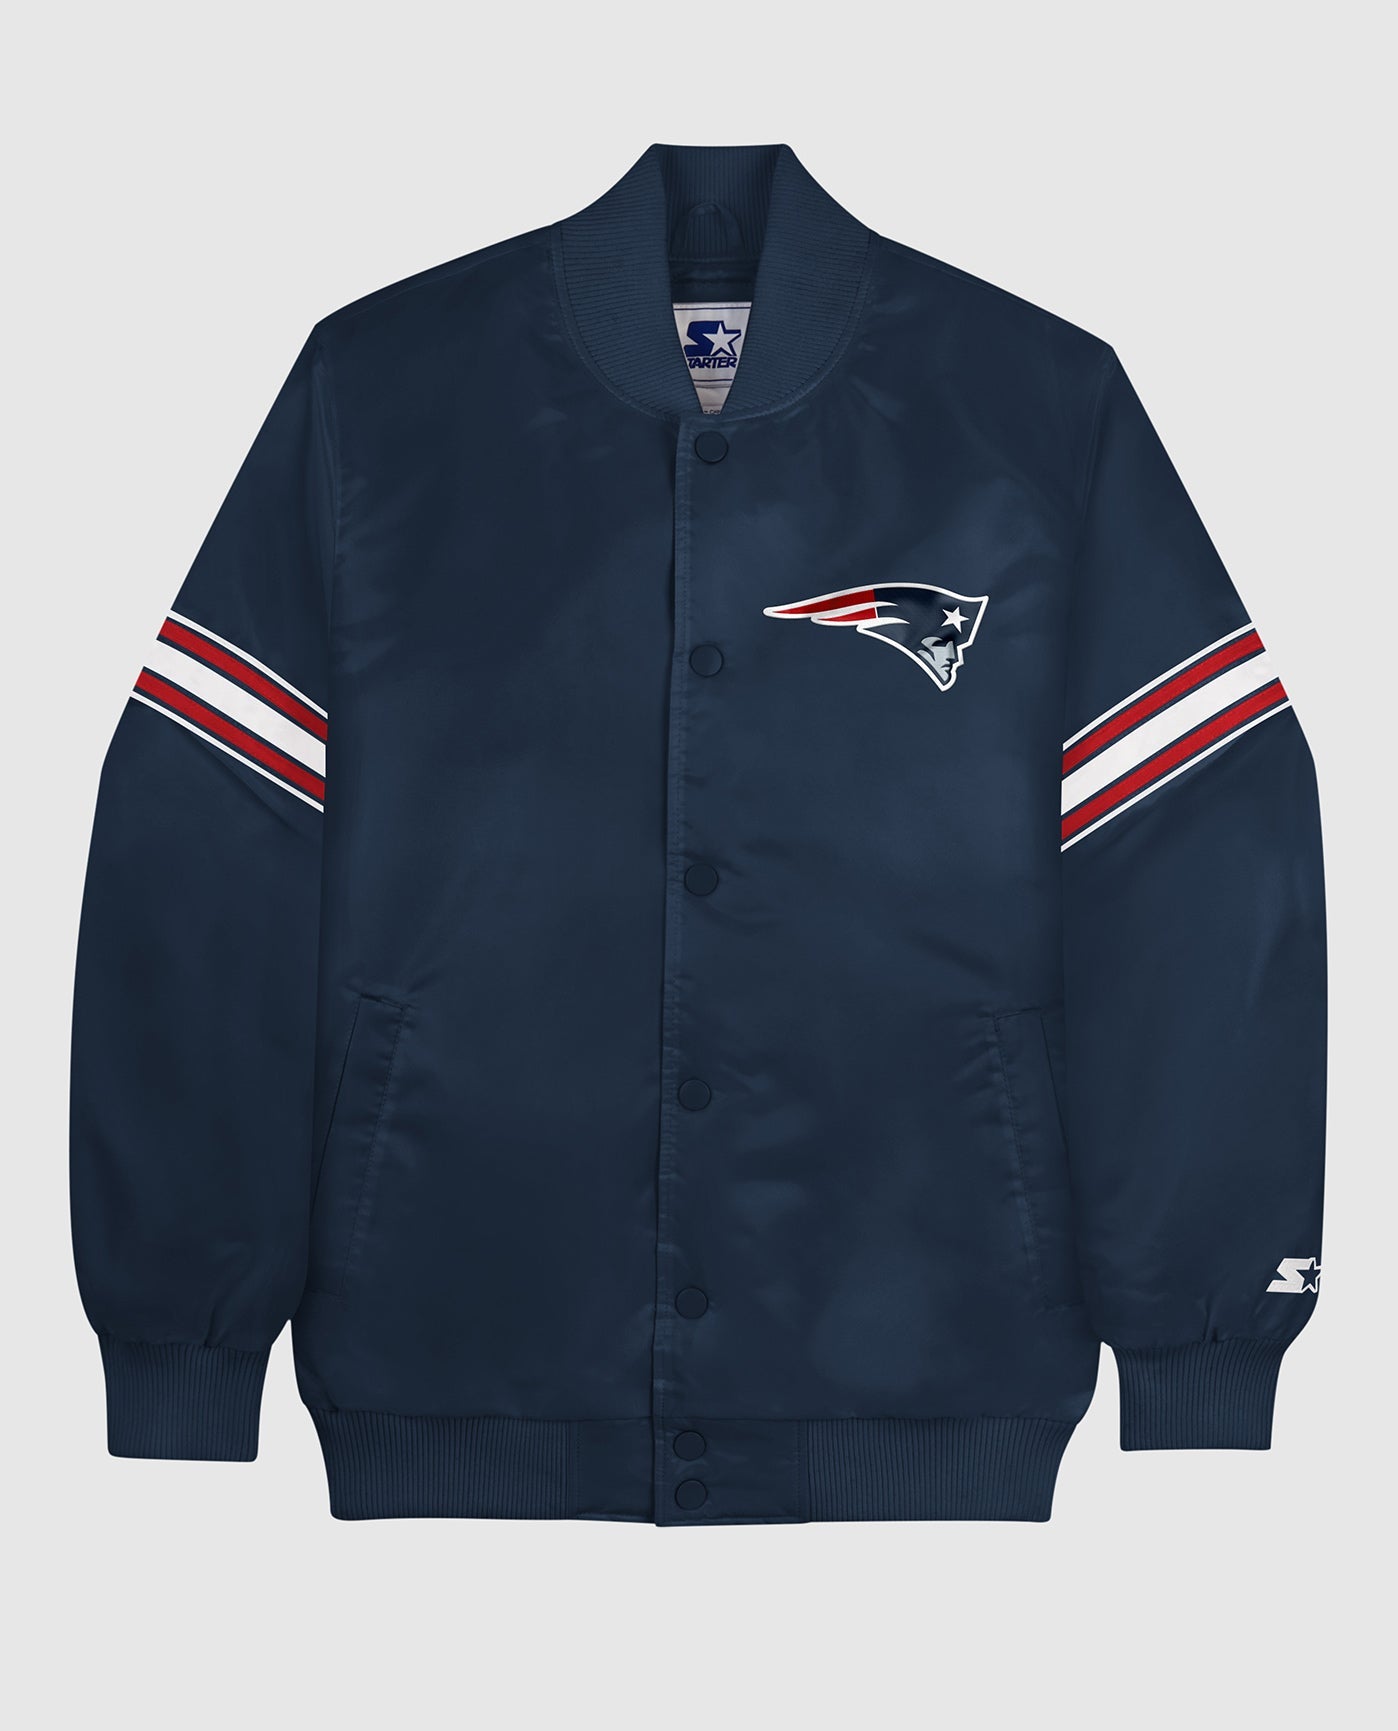 NFL Men's Varsity Jacket - Navy - L